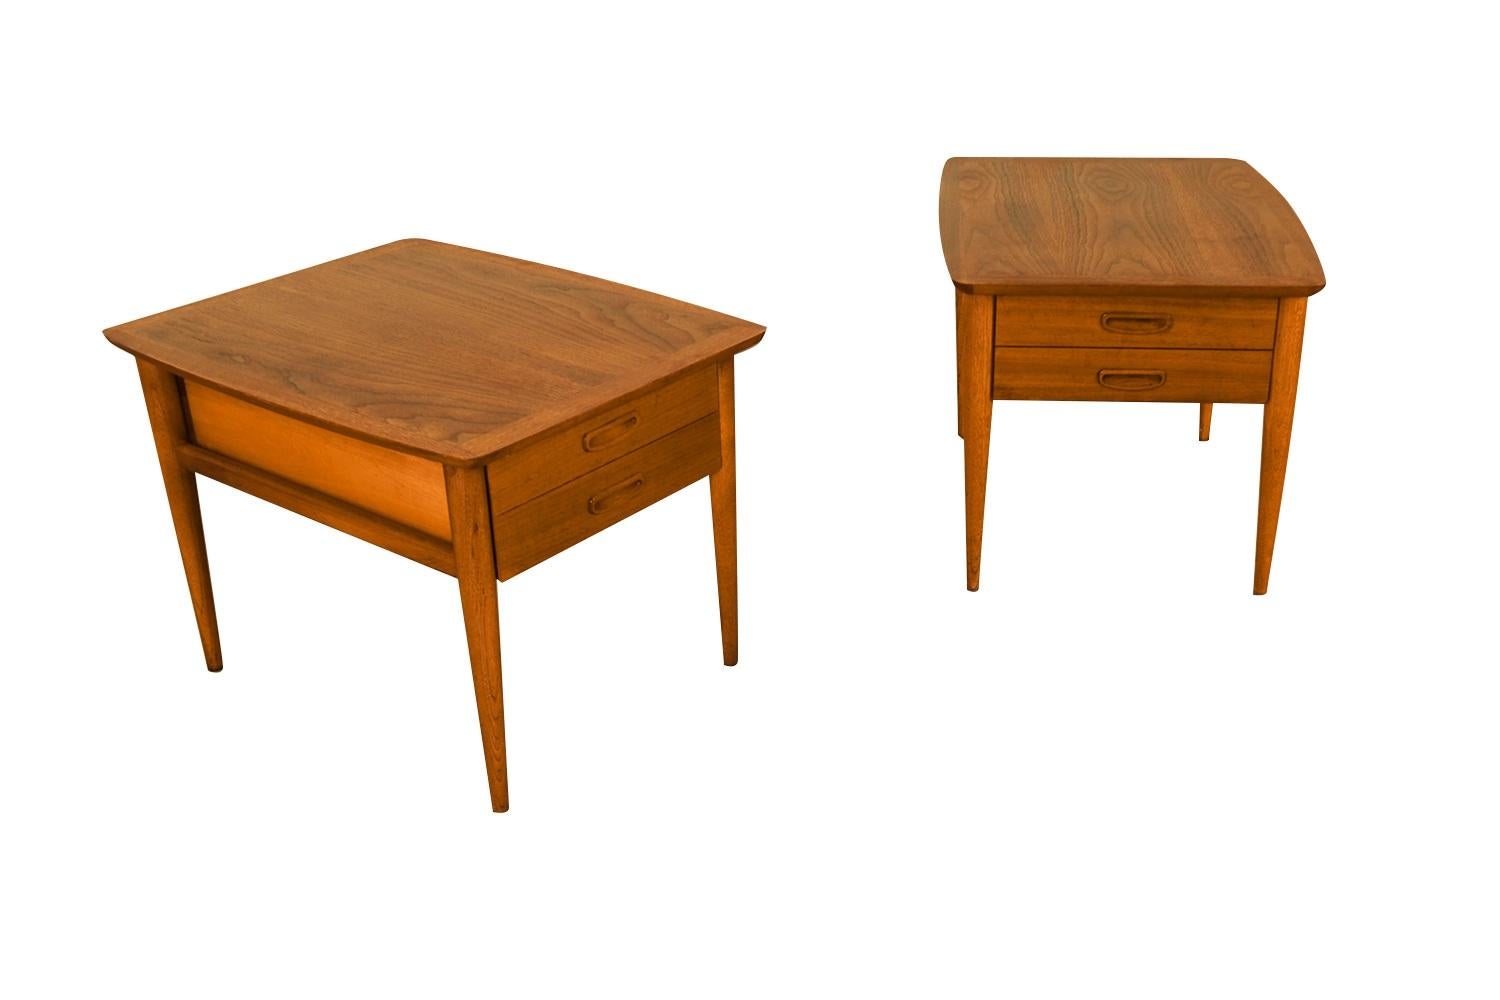 Une belle paire de tables d'appoint / tables de nuit par Lane Altavista Furniture Co. Chacun d'entre eux est en bon état. Le dessus du meuble présente un superbe grain de bois avec des coins arrondis, au-dessus d'un tiroir créé pour ressembler à